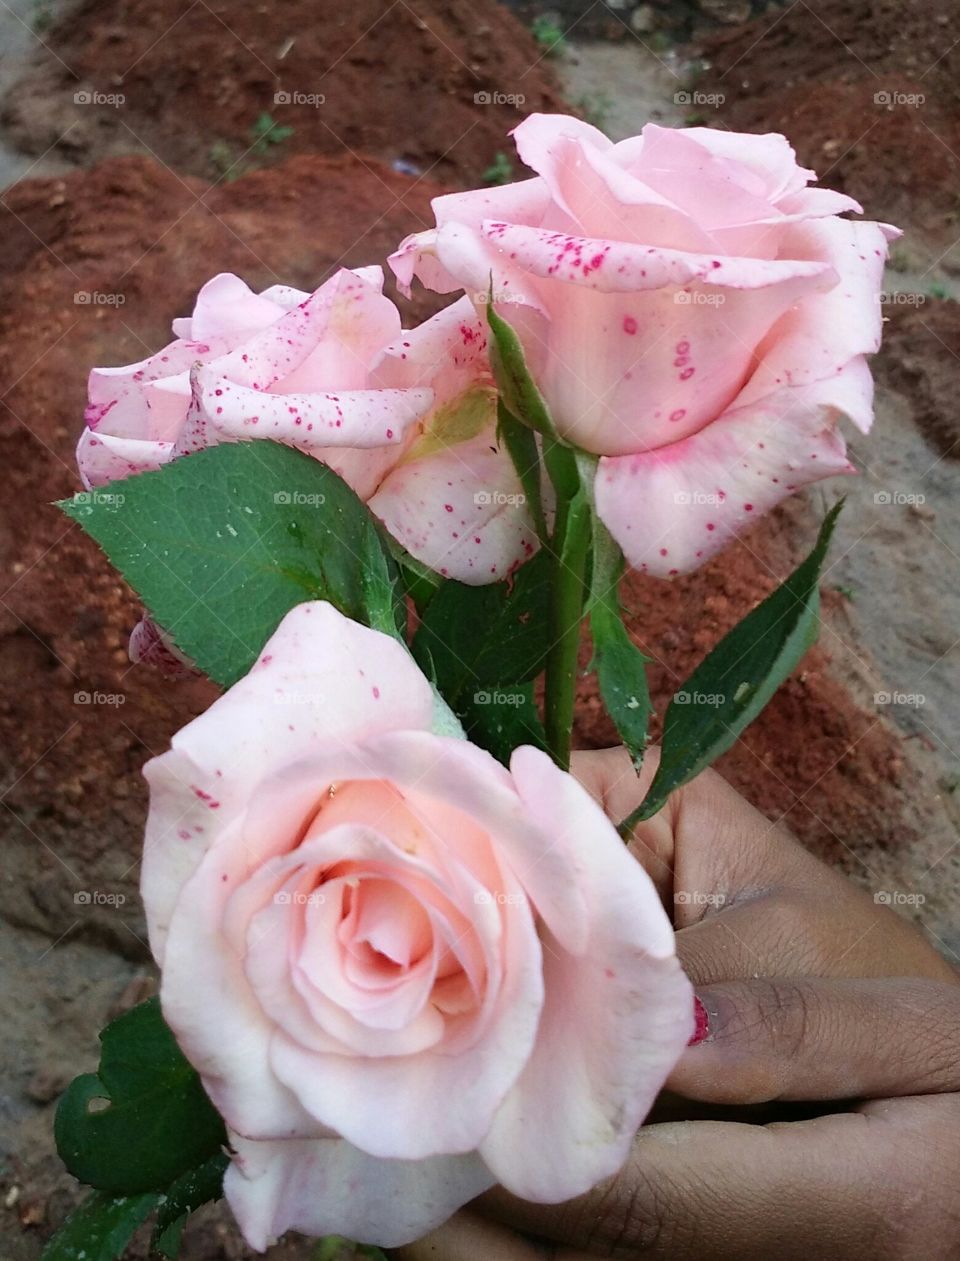 the beautiful roses